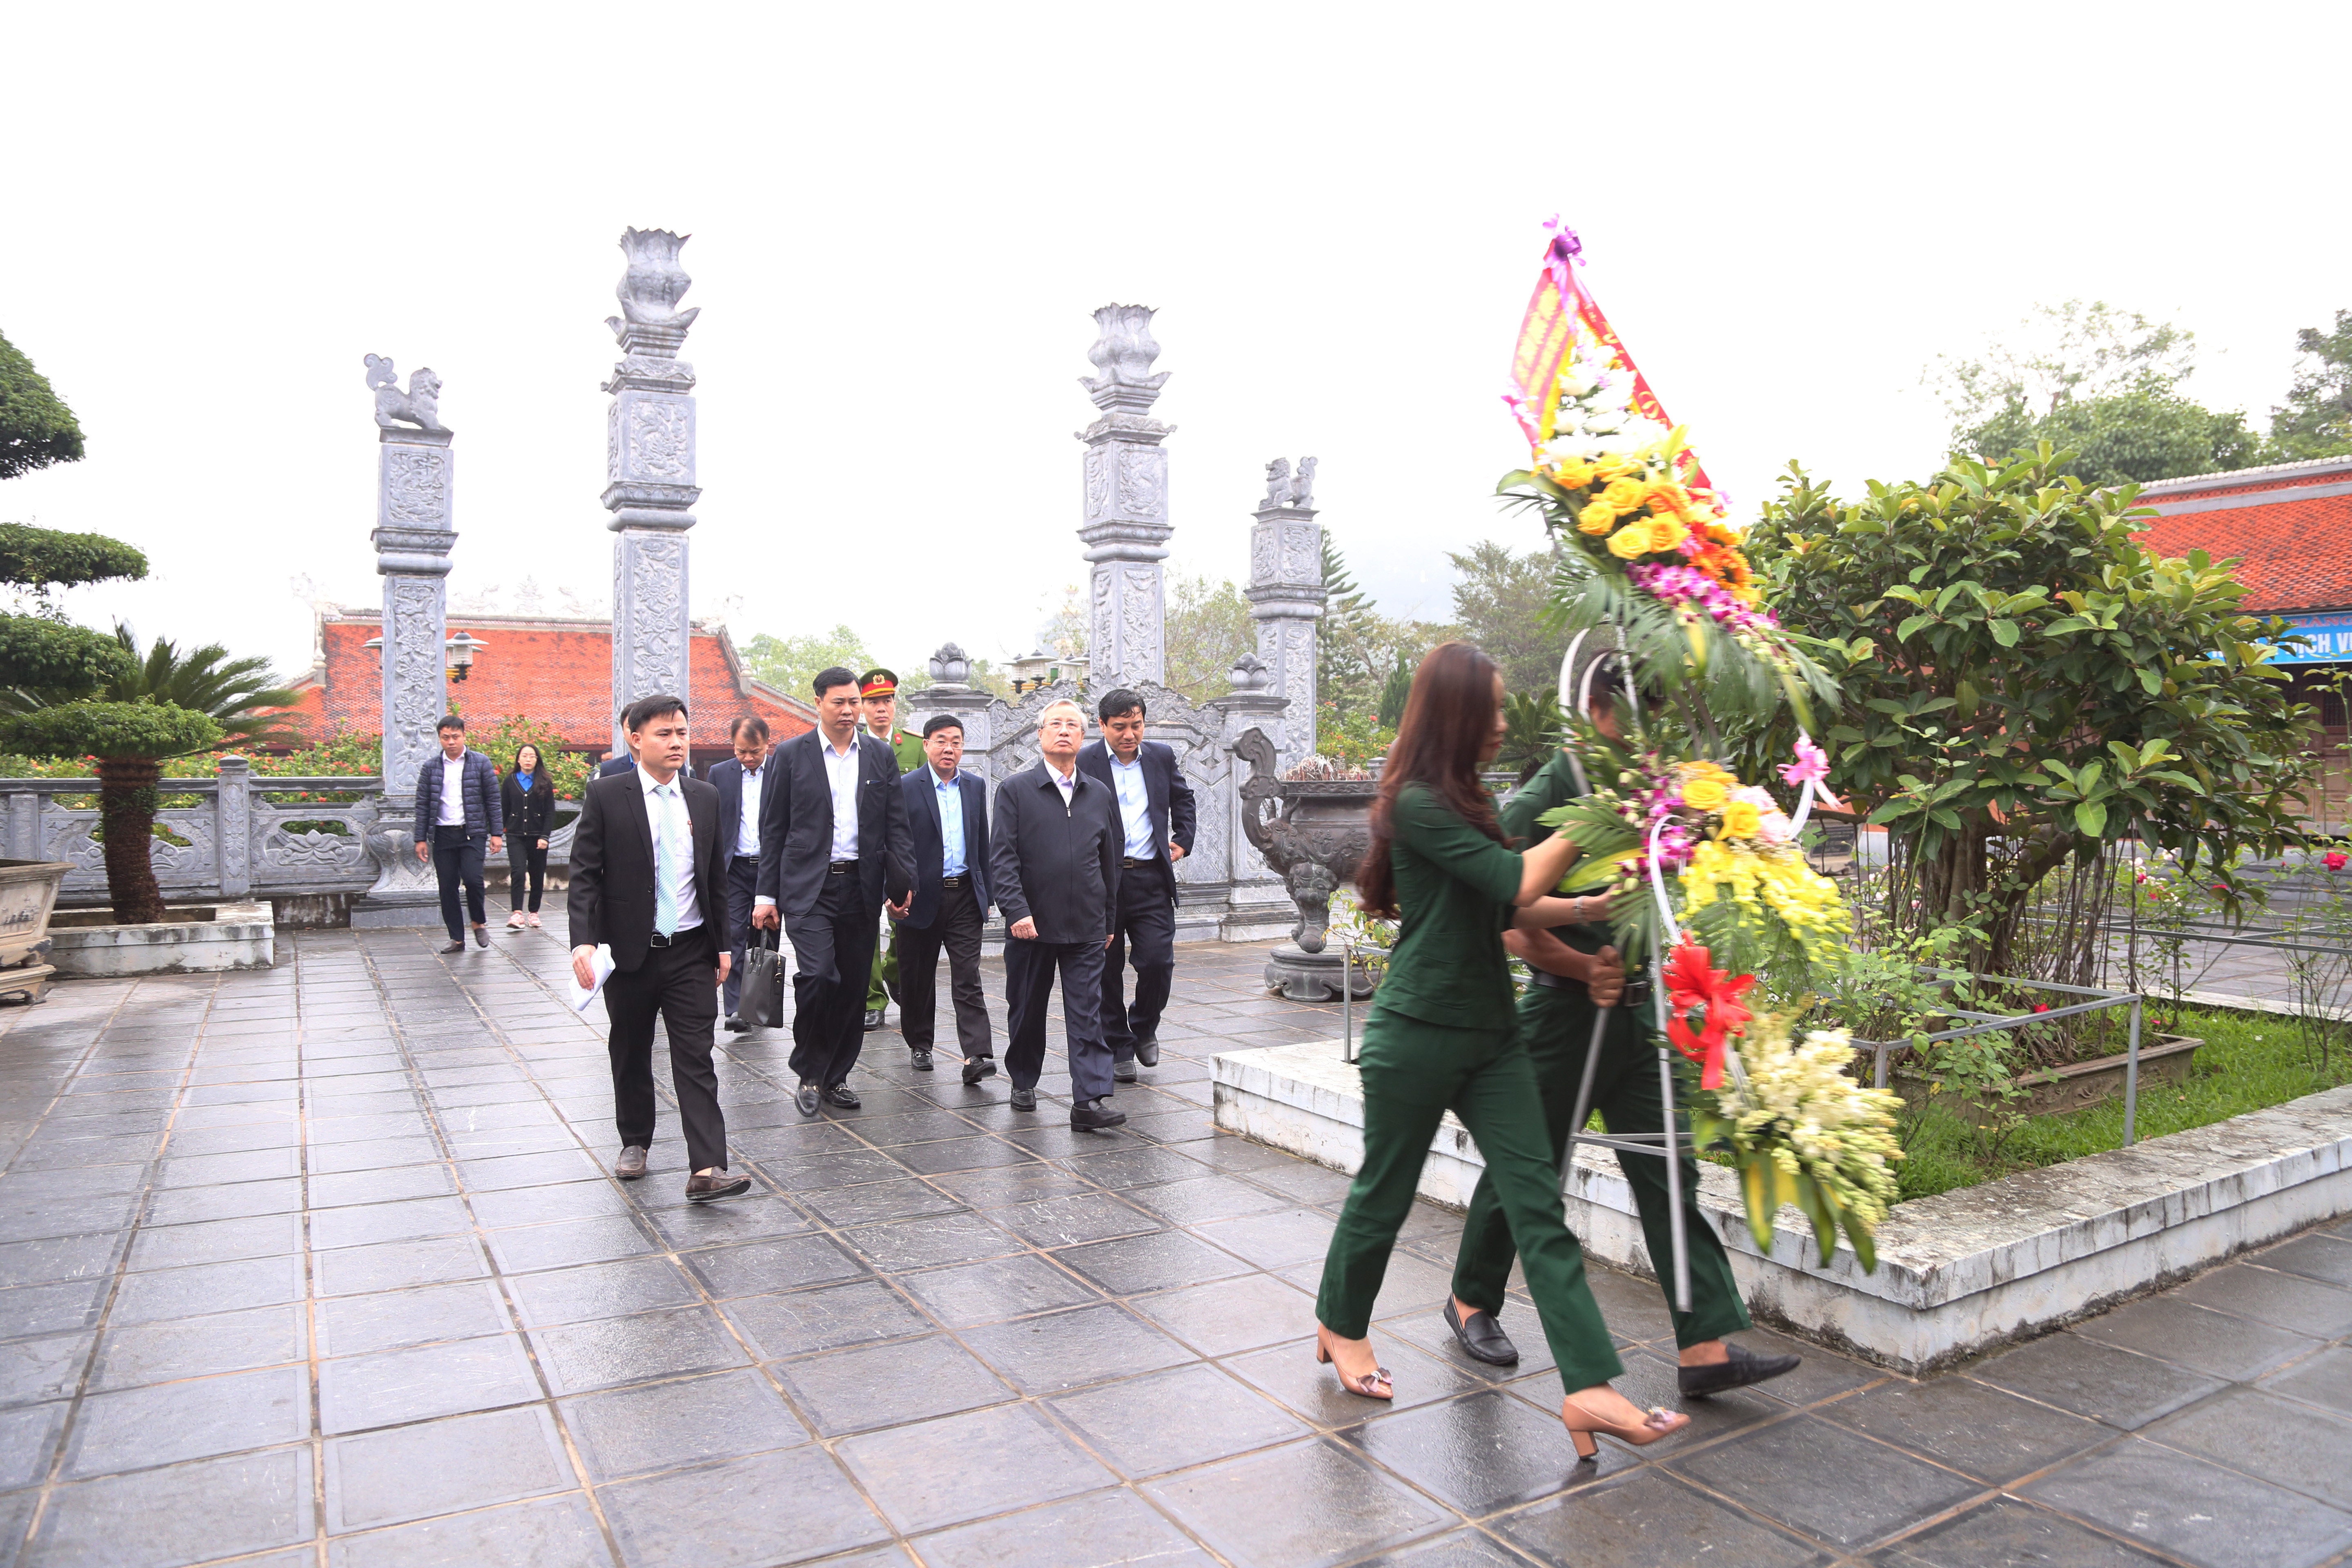 Đồng chí Trần Quốc Vượng - Ủy viên Bộ Chính trị, Thường trực Ban Bí thư Trung ương Đảng và các đại biểu dâng hoa tưởng niệm các anh hùng liệt sỹ tại Khu di tích quốc gia đặc biệt Truông Bồn. Ảnh: Đào Tuấn 